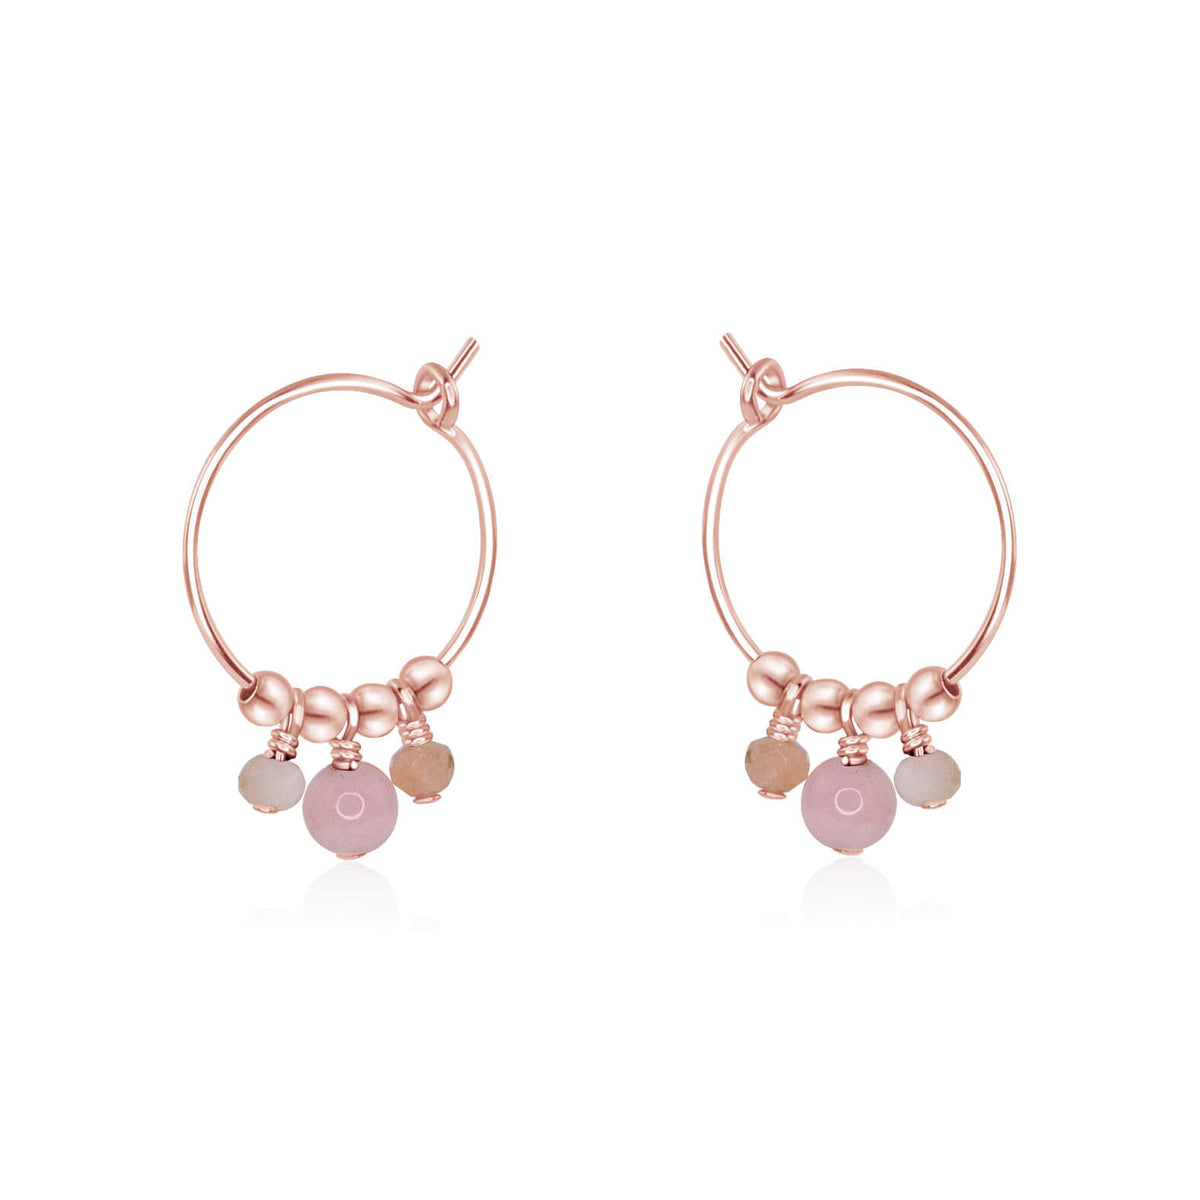 Hoop Earrings - Pink Peruvian Opal - 14K Rose Gold Fill - Luna Tide Handmade Jewellery